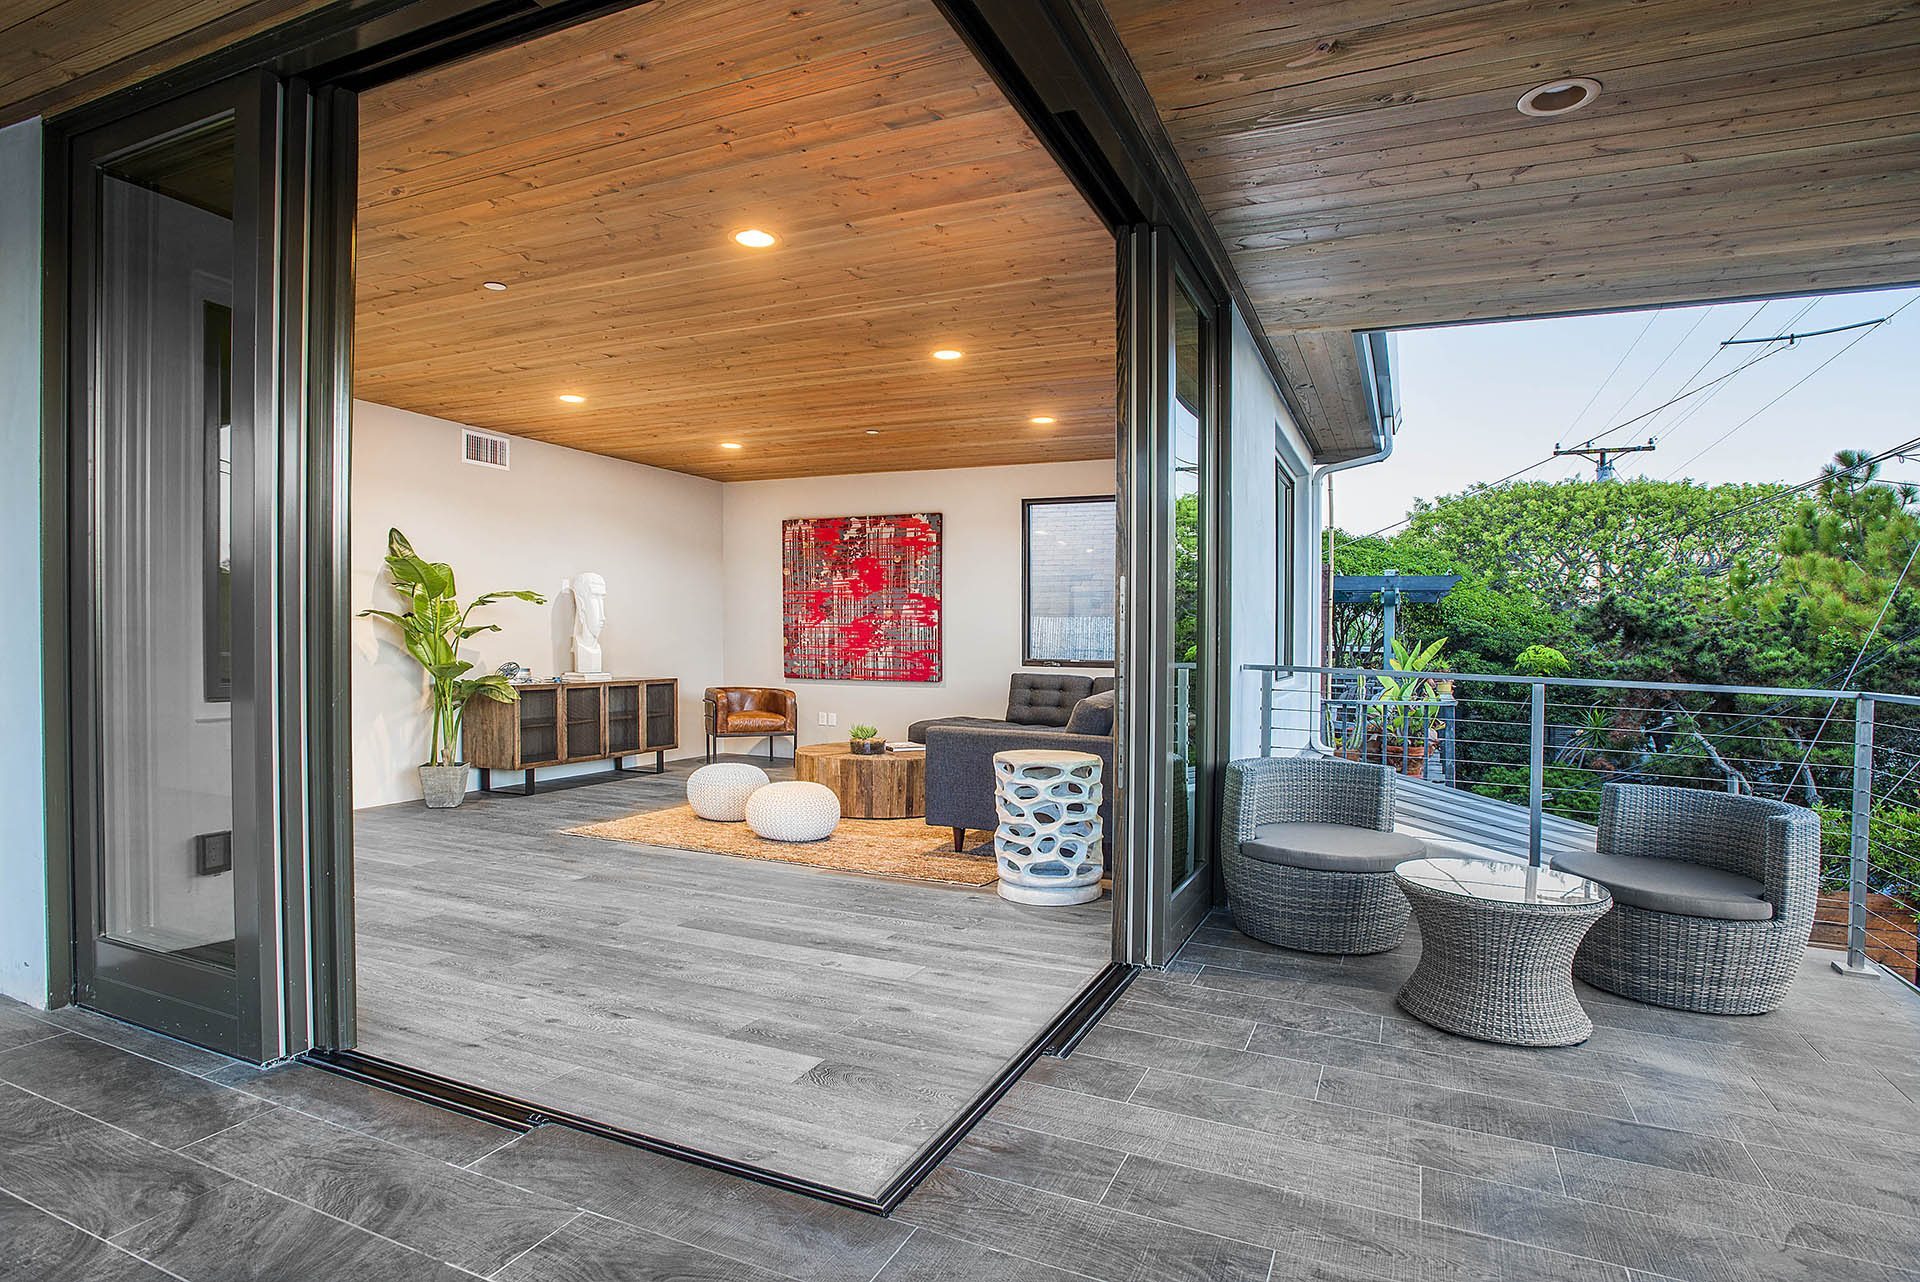 indoor-outdoor-living-space